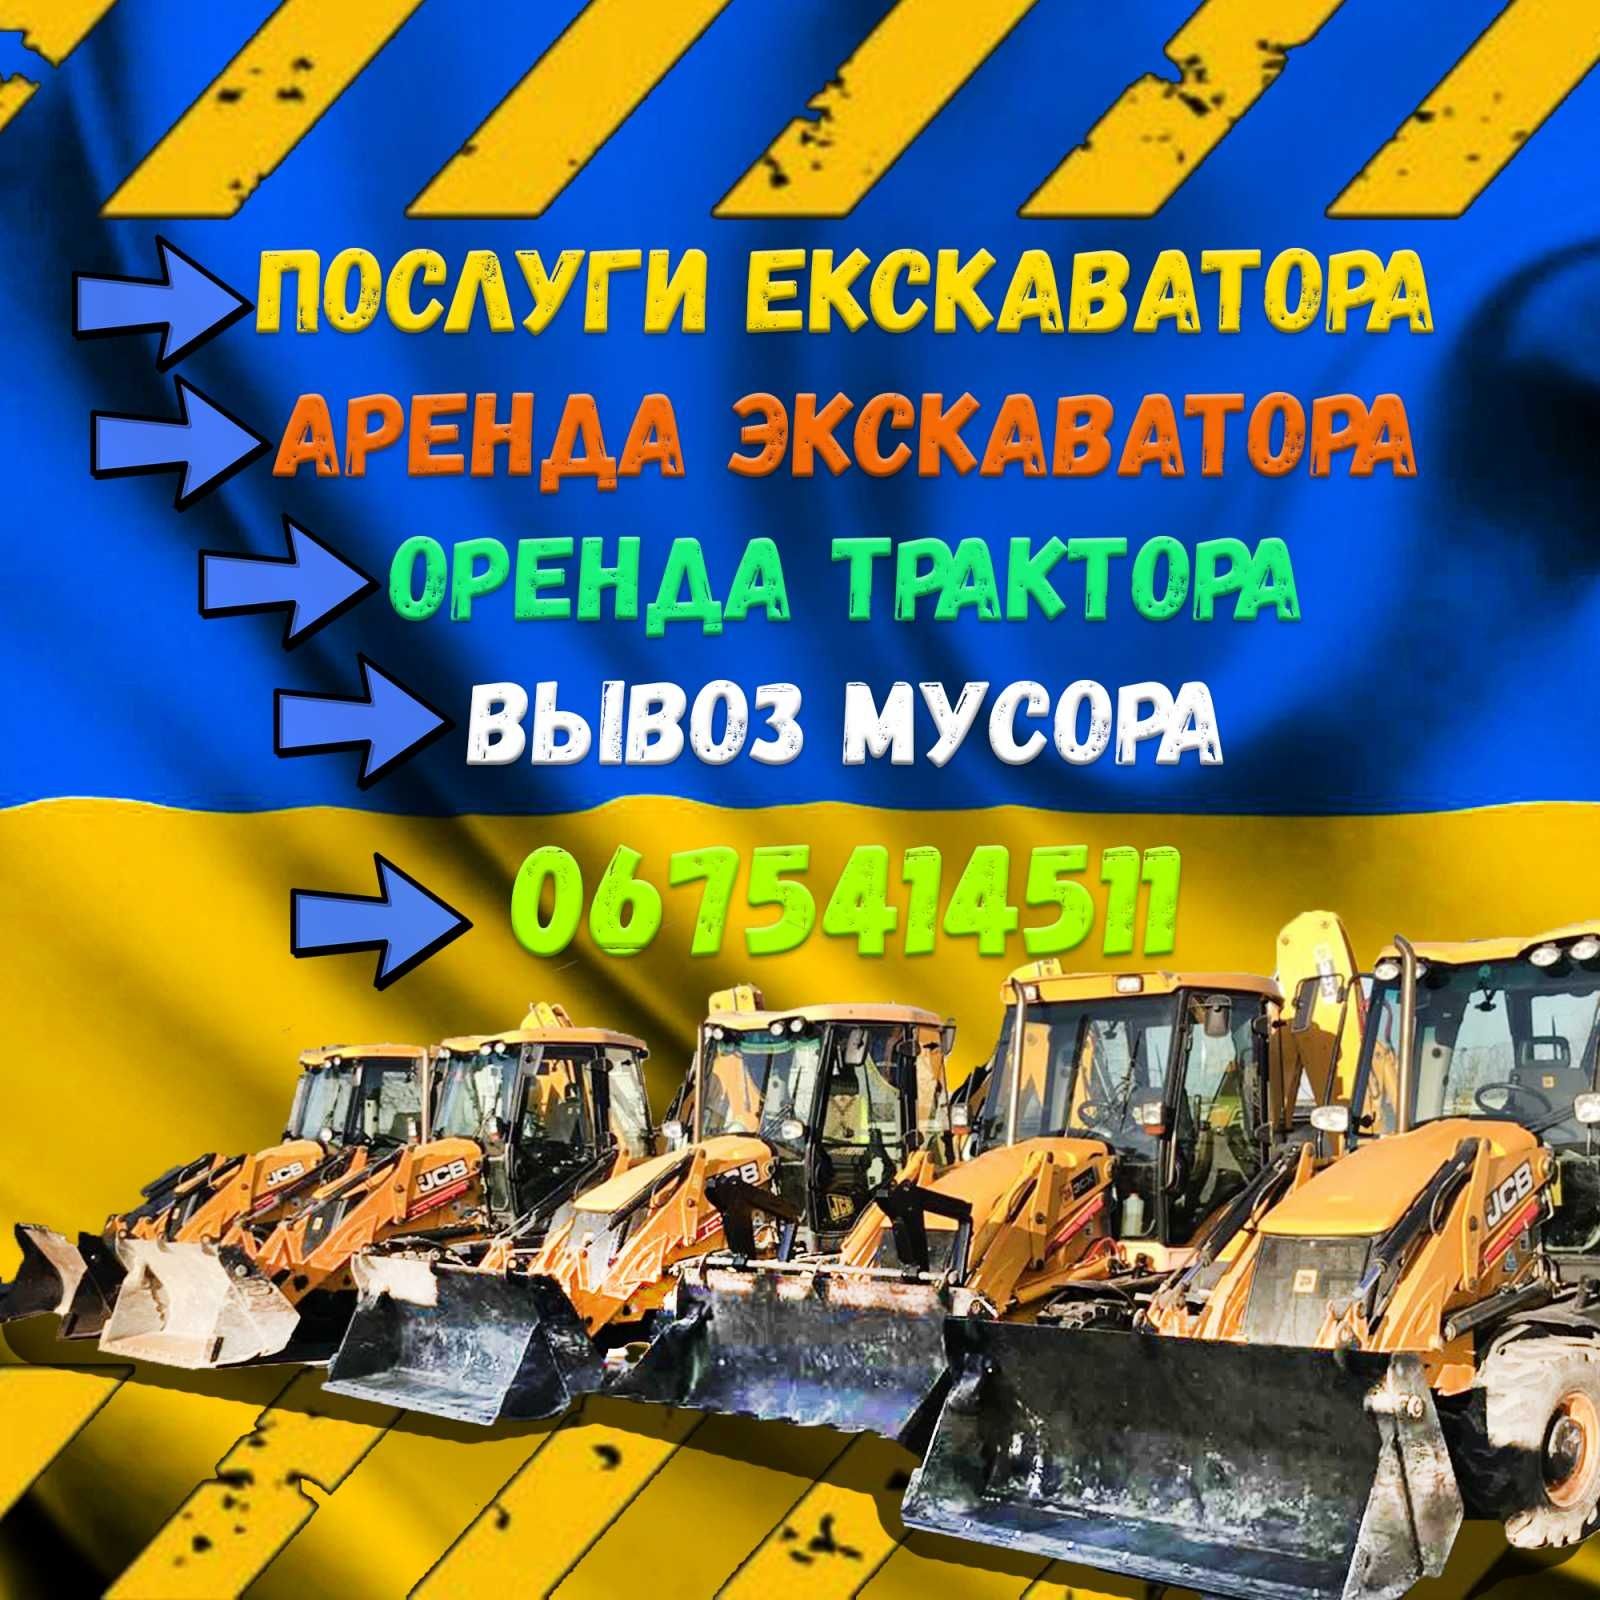 Послуги екскаватора оренда трактора JCB 3-4 Гідромолот Вишгород